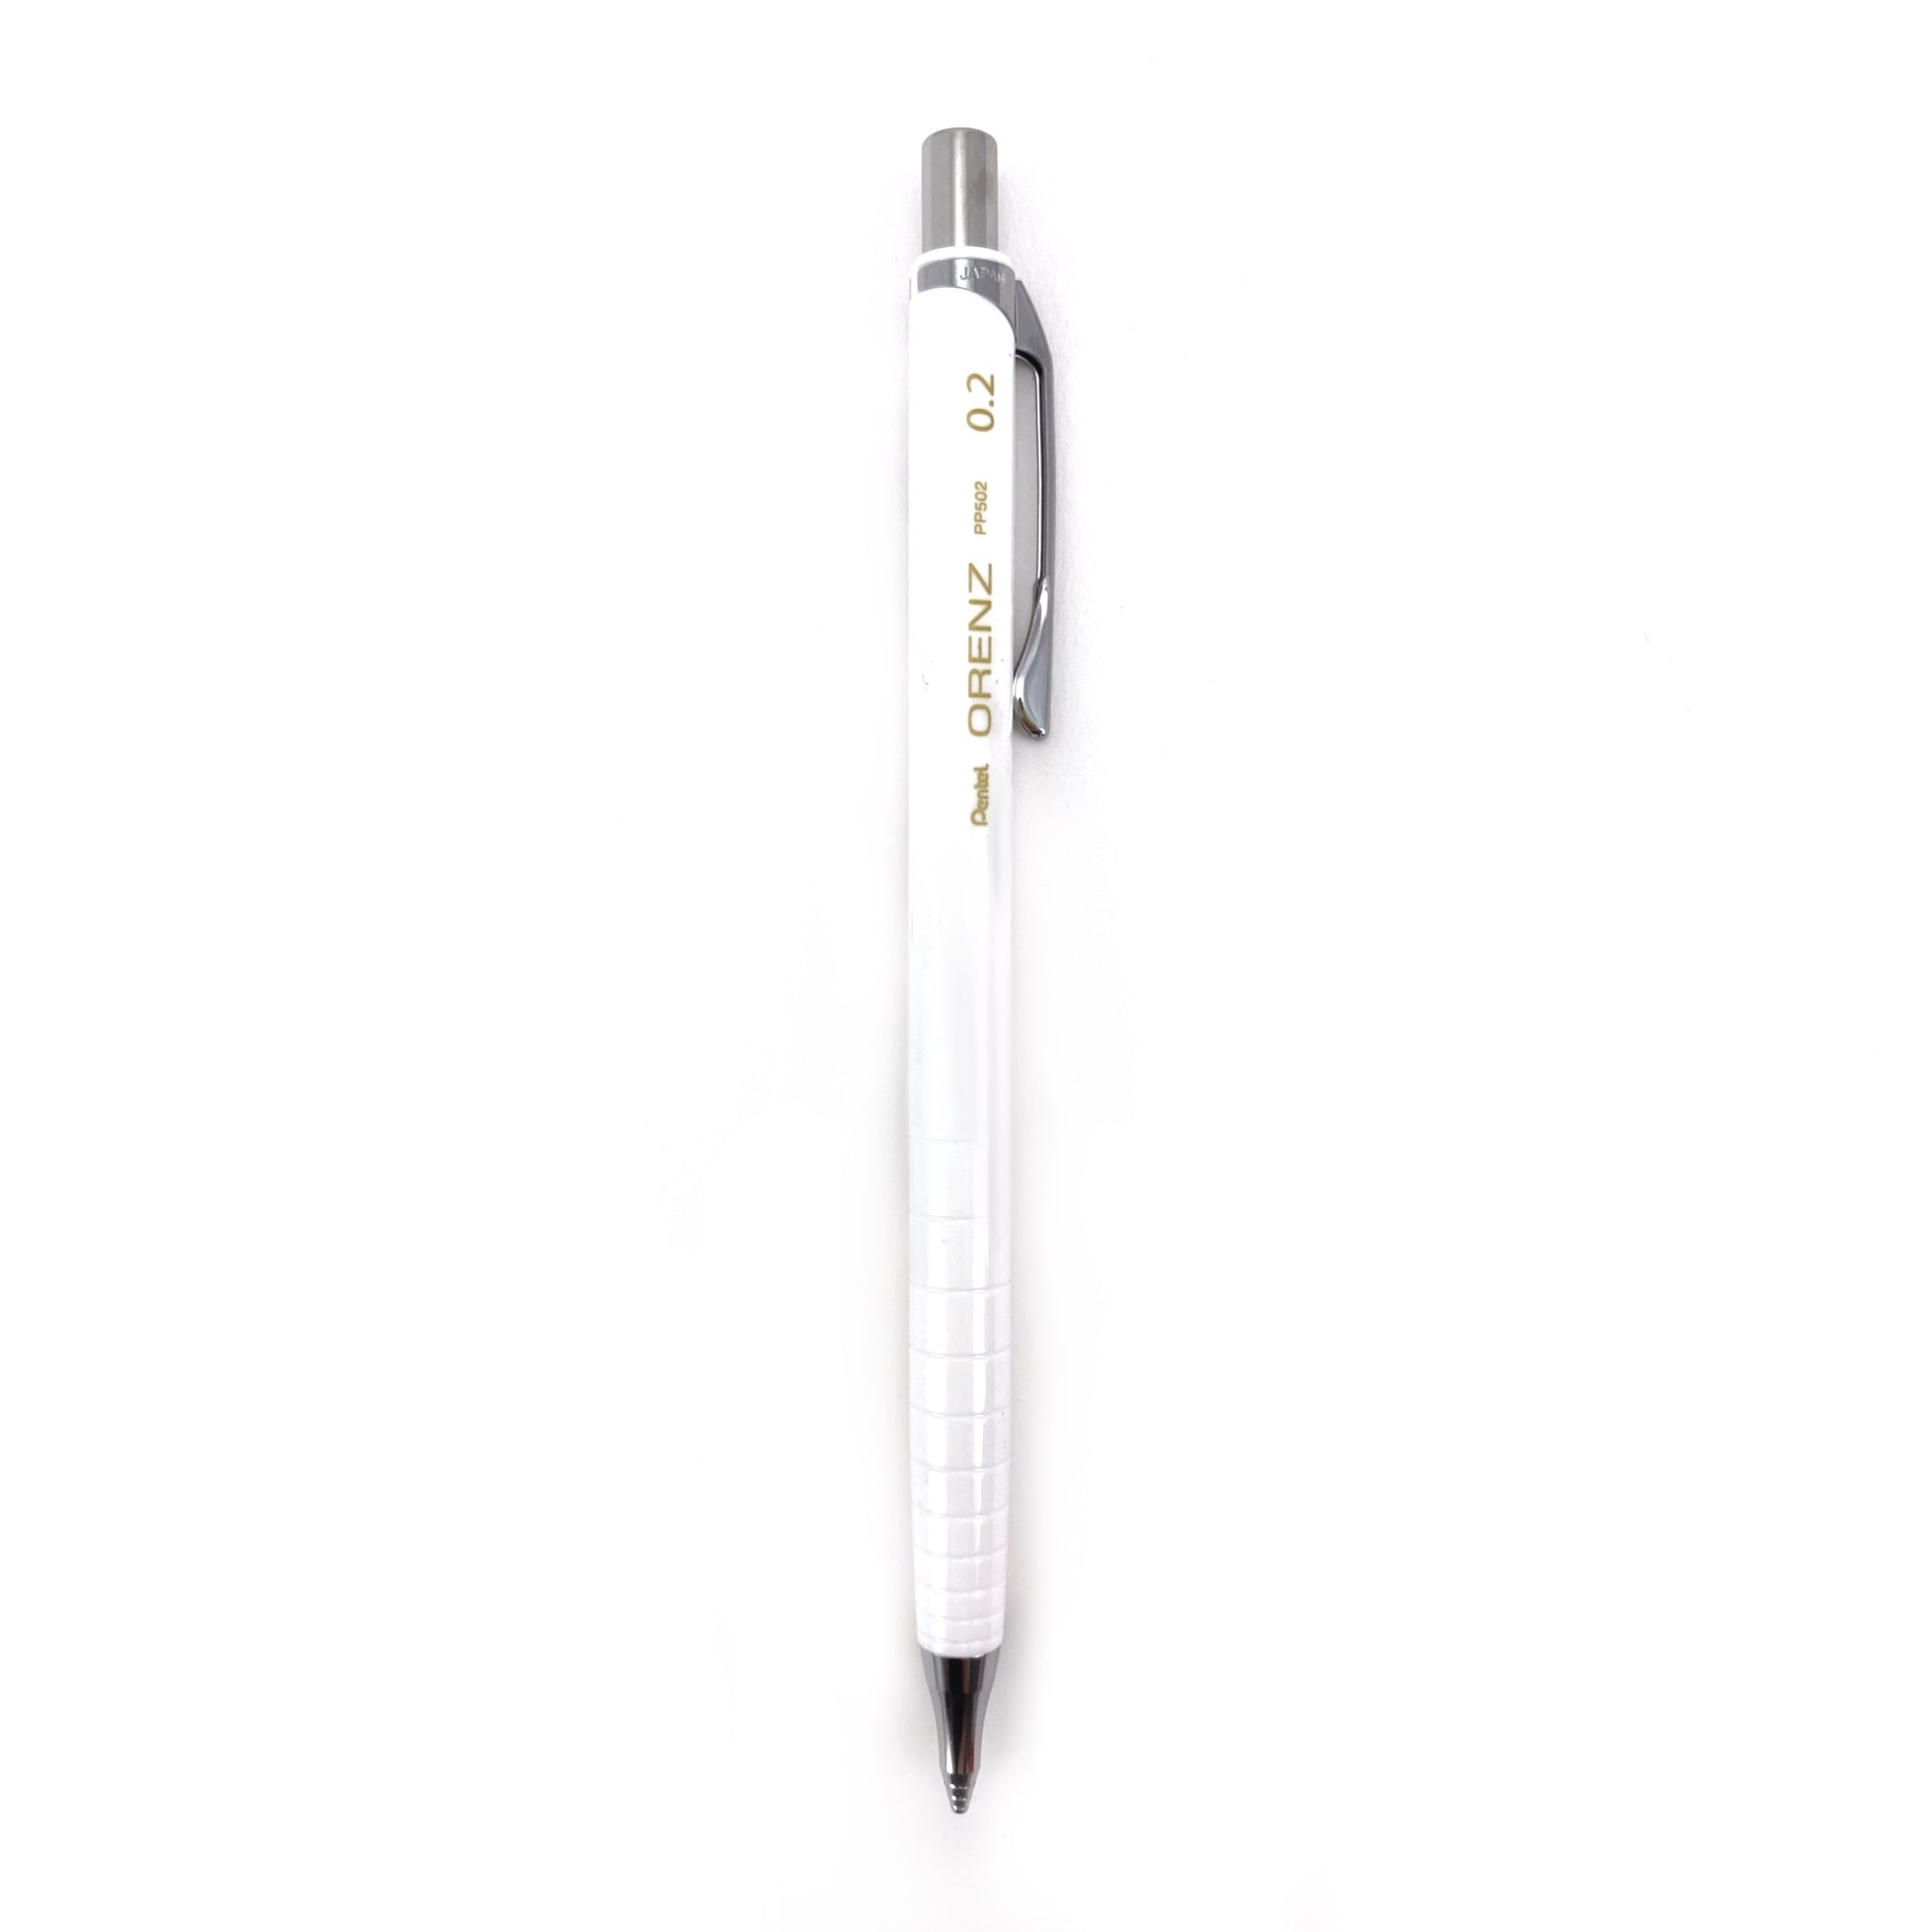 Pentel Tradio Stylo Sketch Pen – K. A. Artist Shop